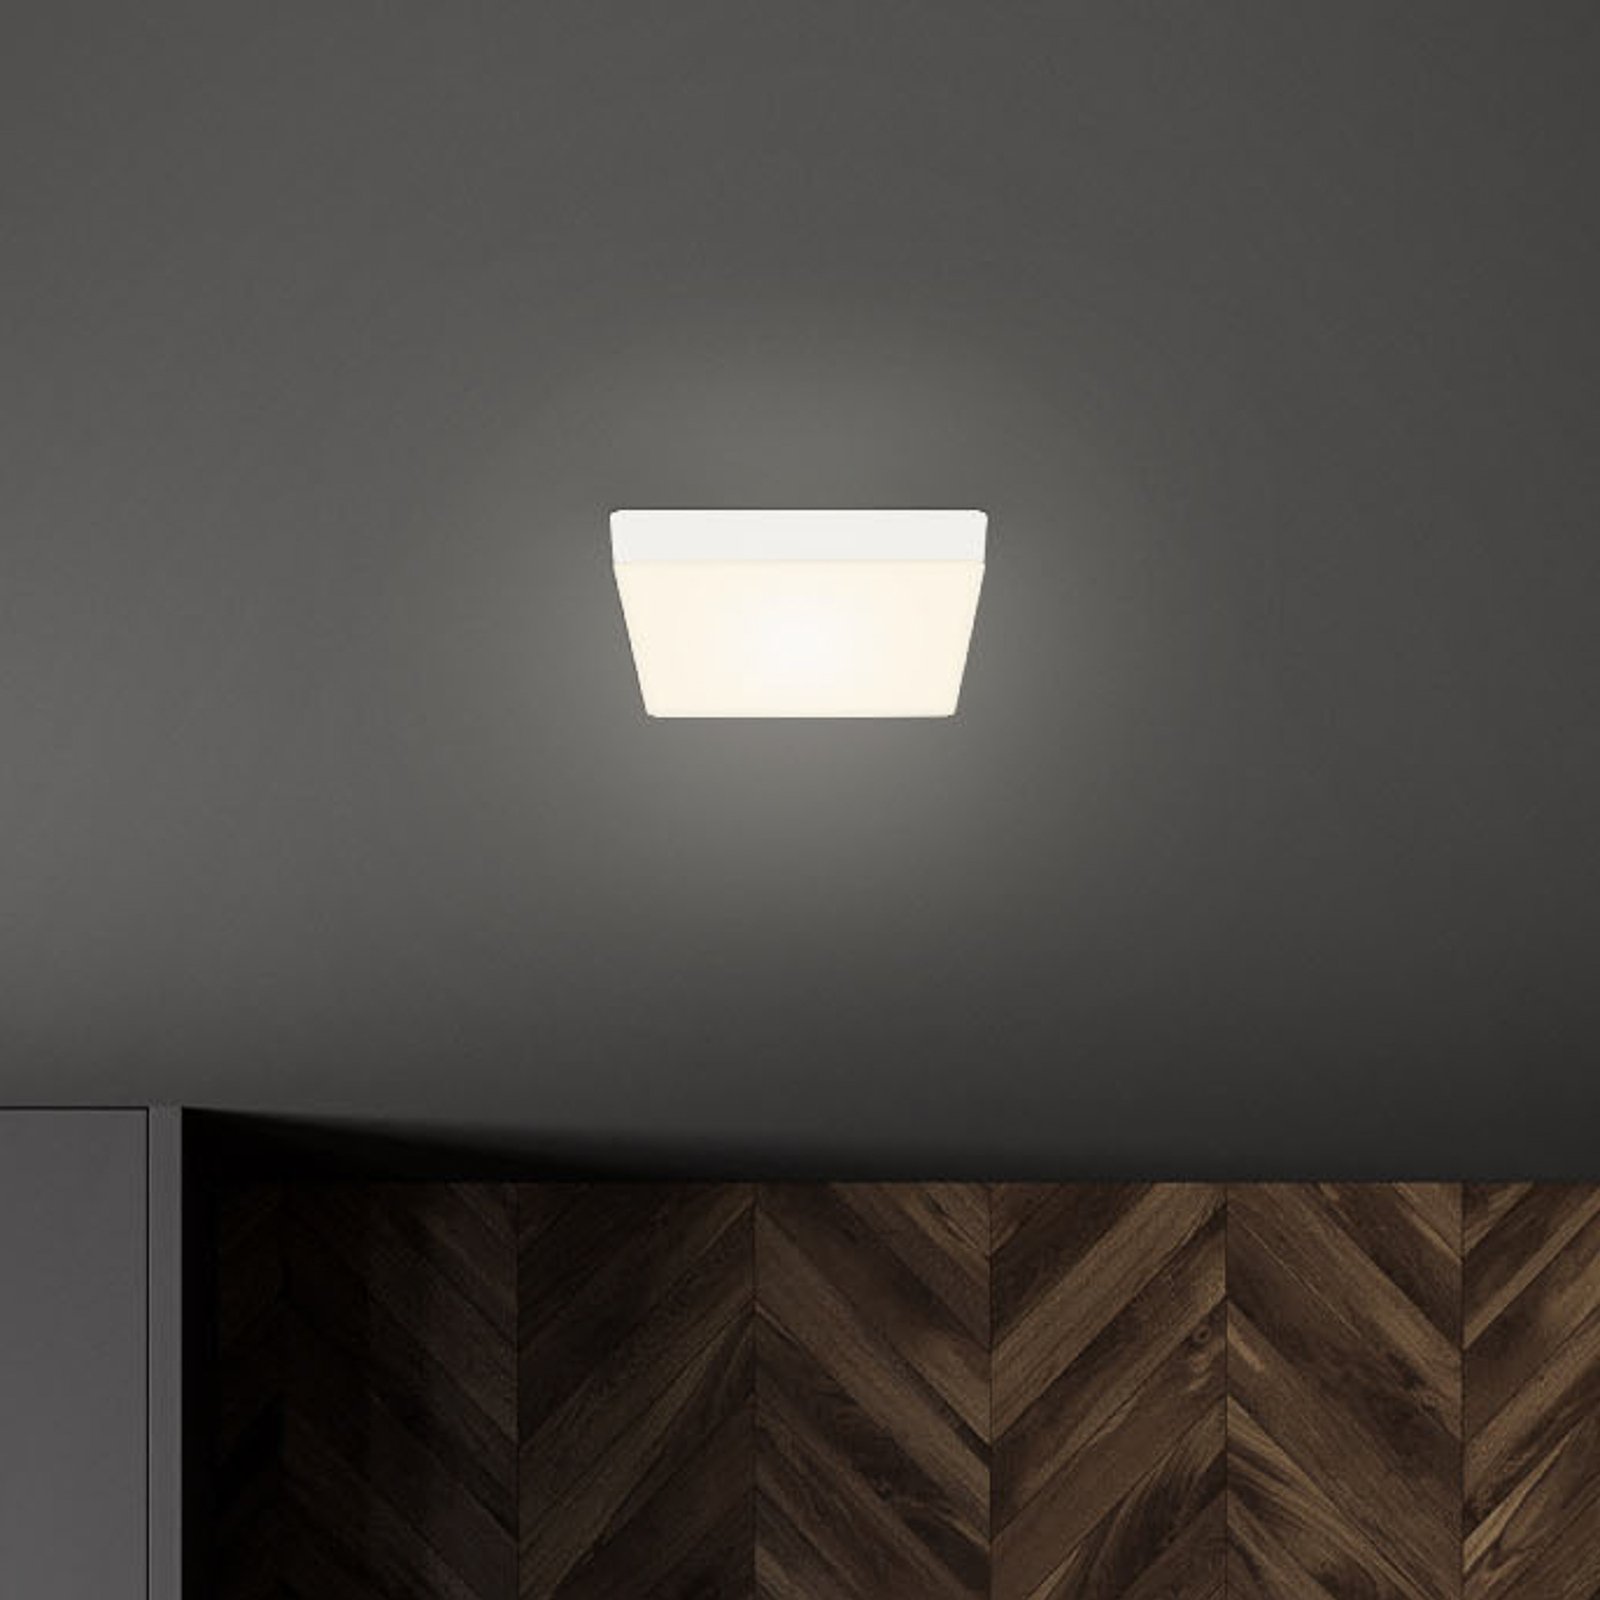 Flame LED ceiling light, 15.7 x 15.7 cm, white